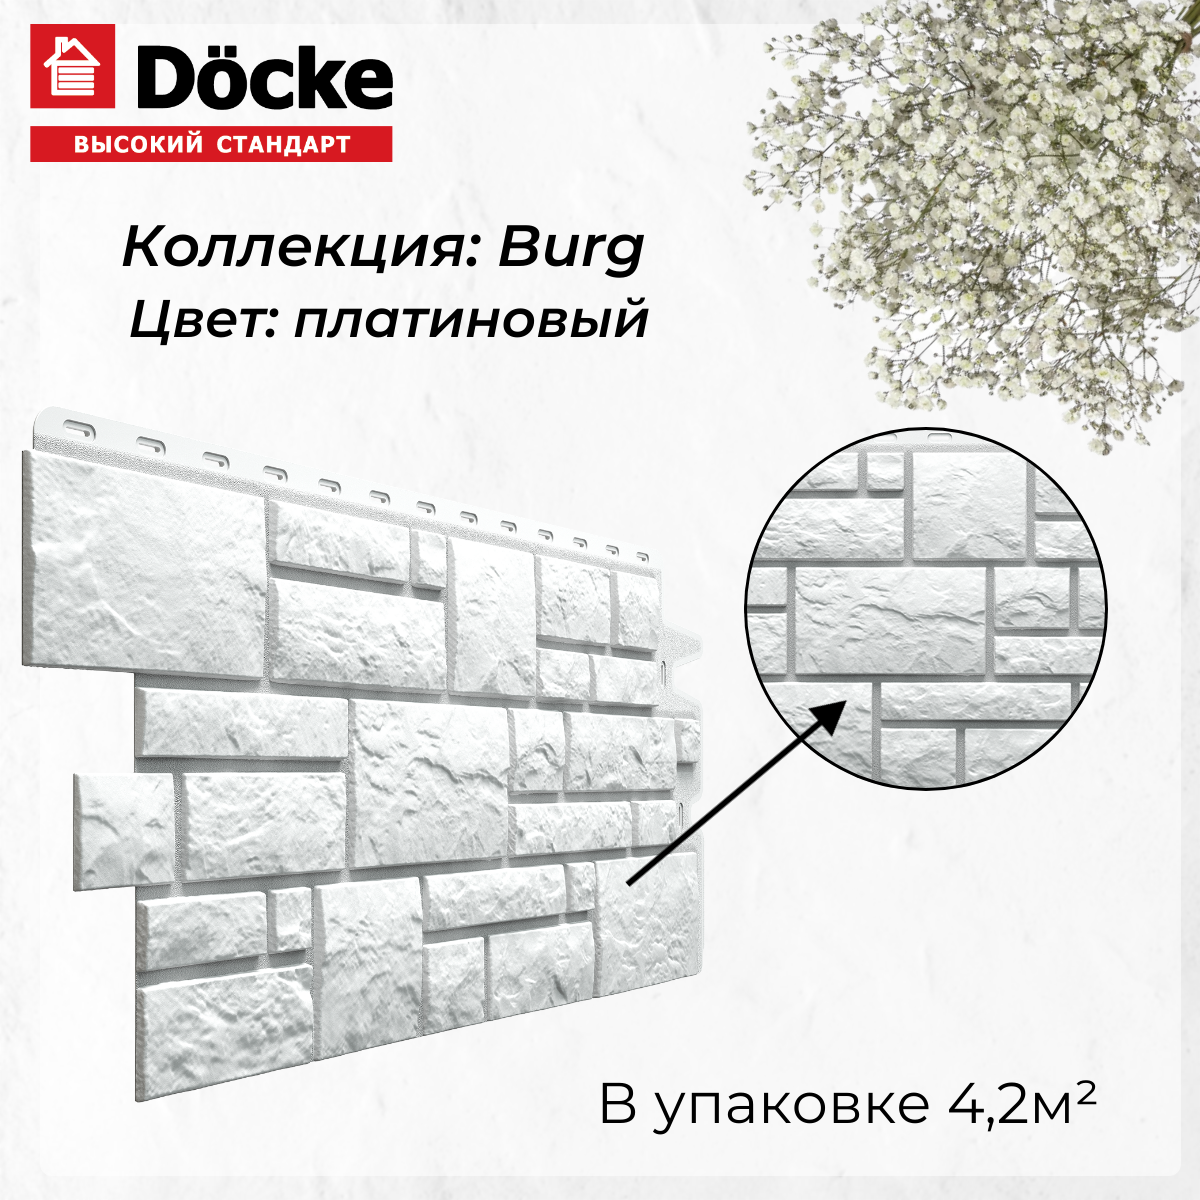 Панель фасадная BURG Платиновый (946*445 мм) Docke PREMIUM - (1 уп/10шт)